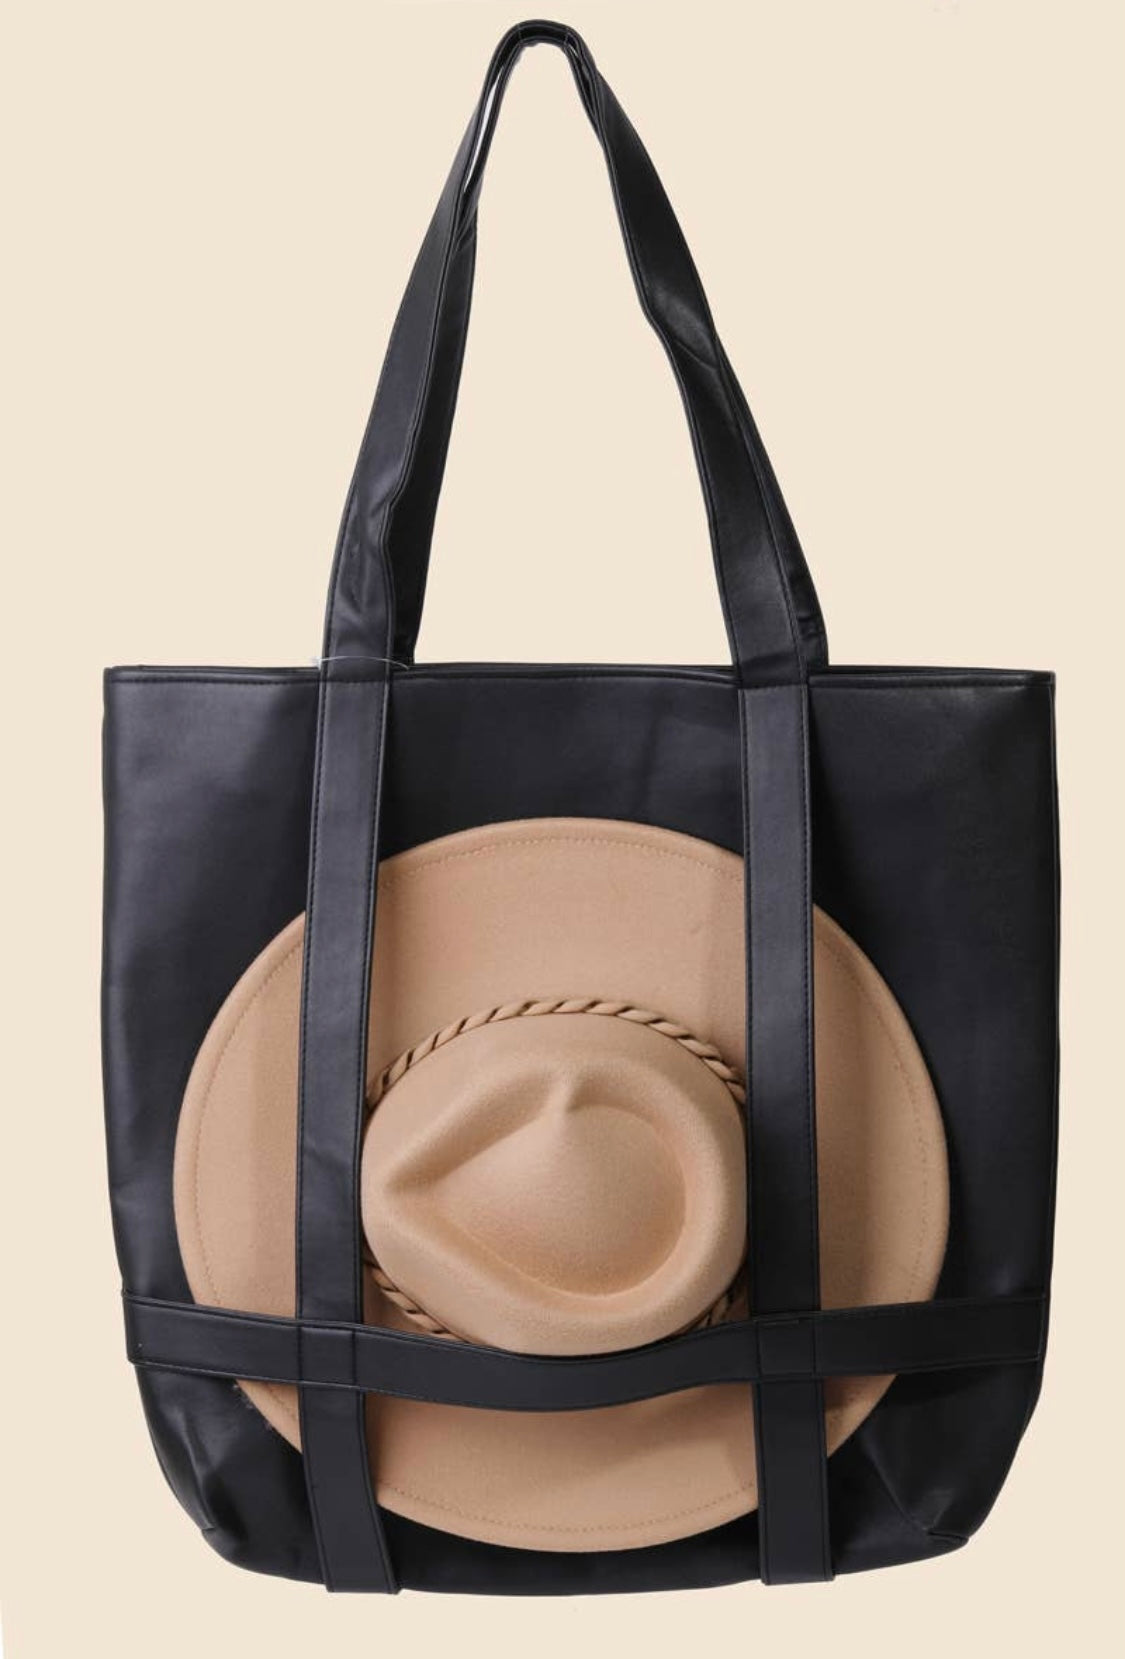 Hat Carrier Travel Bag